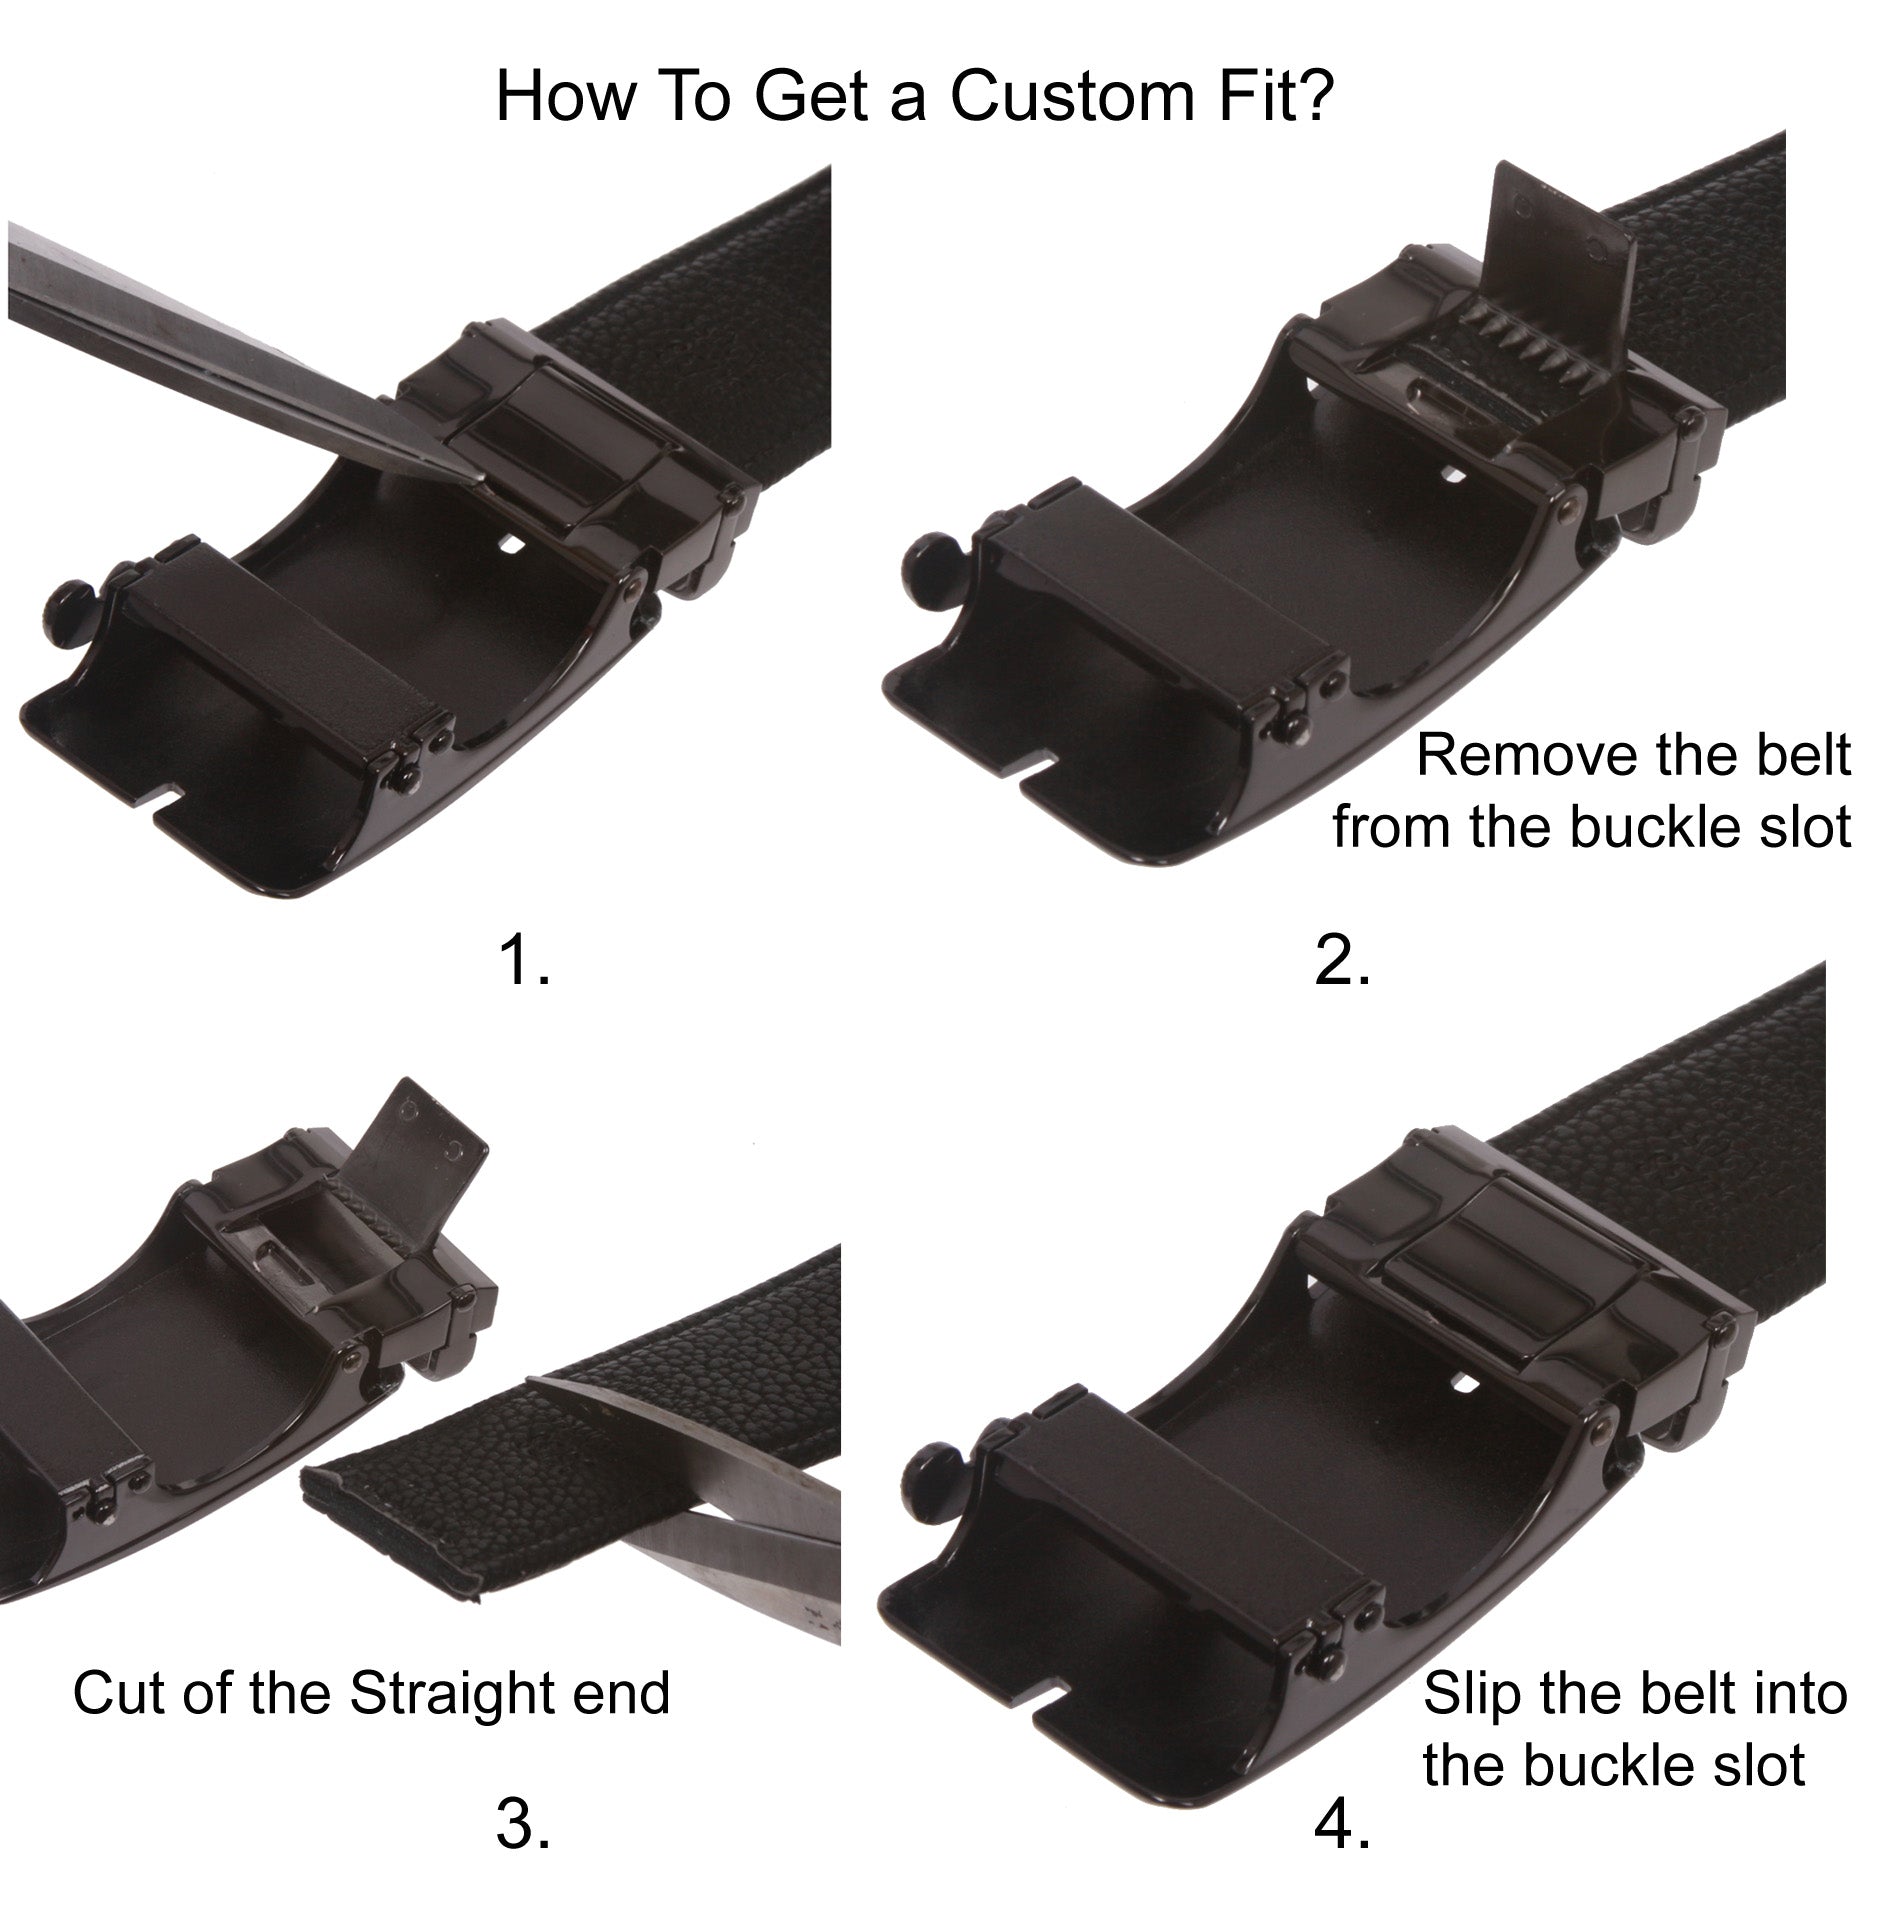 Men's Plain Leather Slide Ratchet Dress Belt with S Design Automatic Buckle